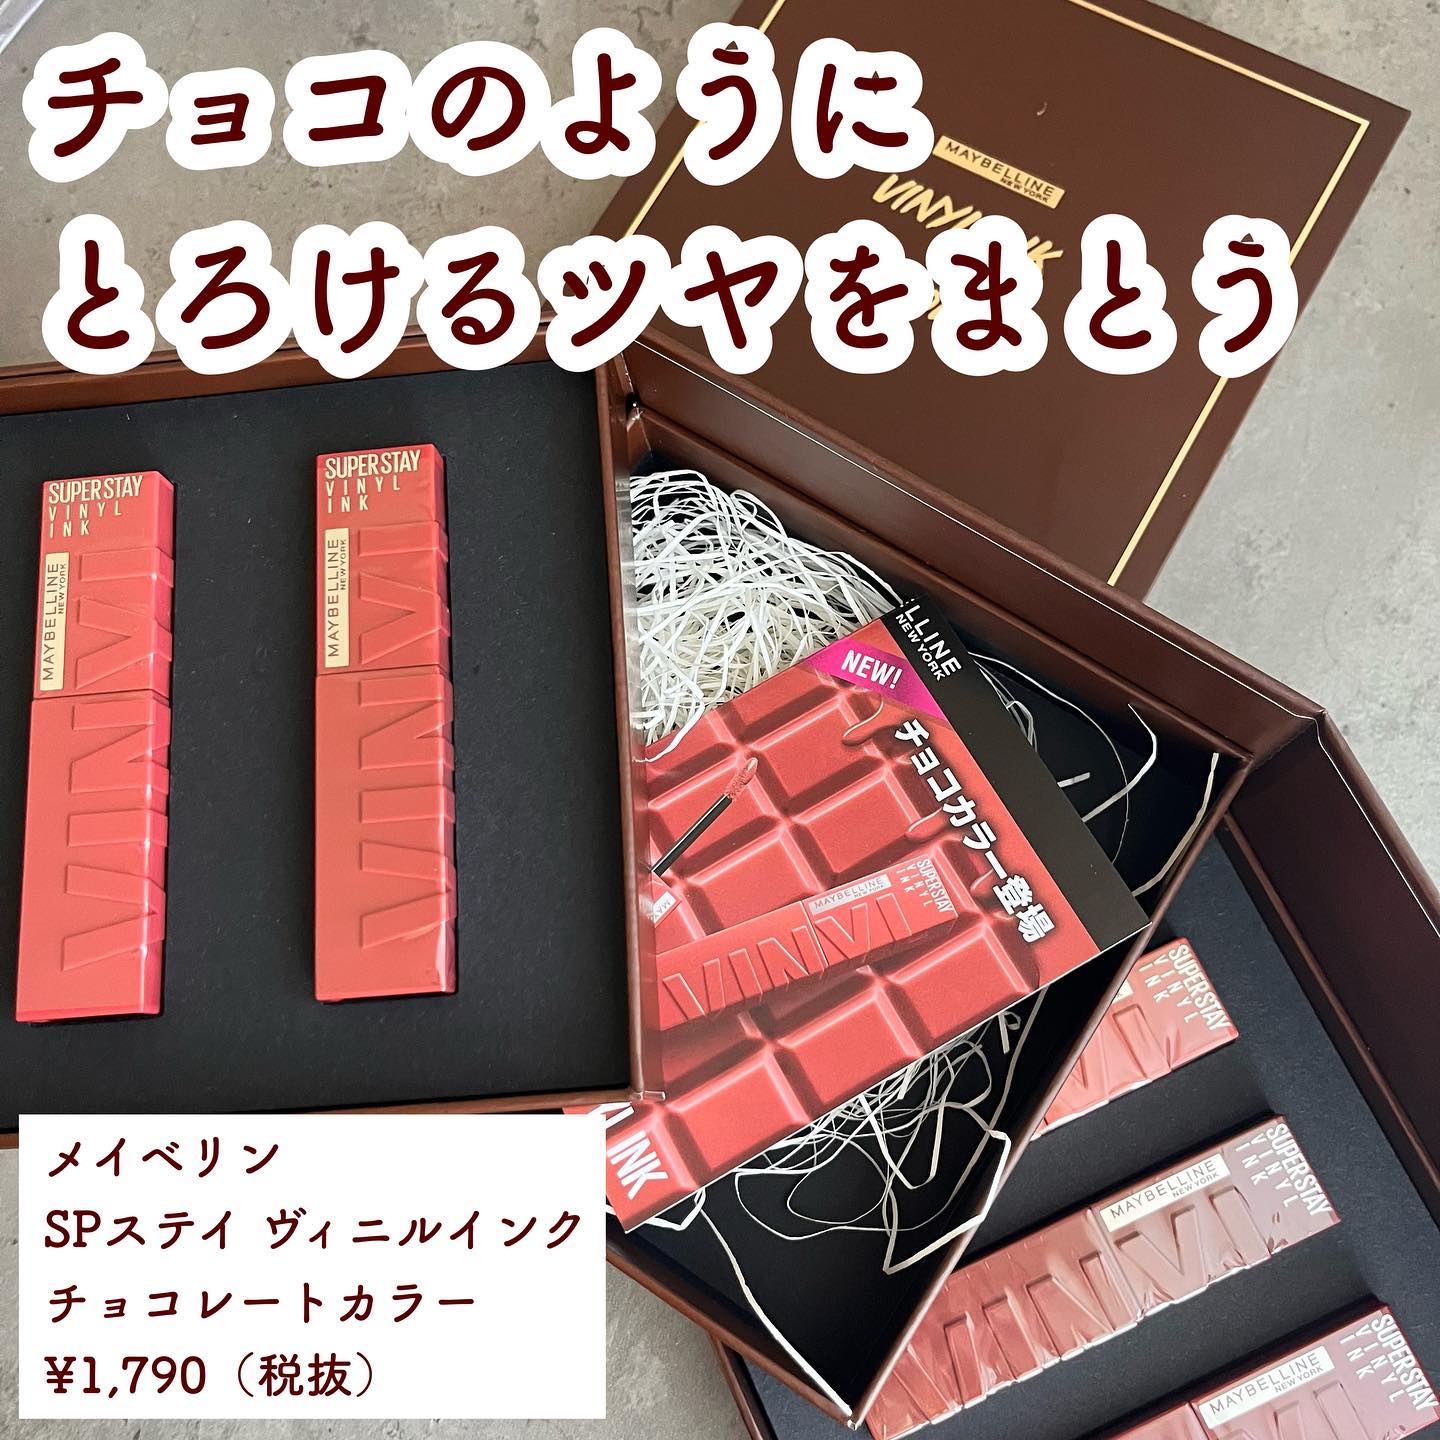 メイベリンニューヨーク ヴィニルインク ✕ チョコレート BOX ５本セット